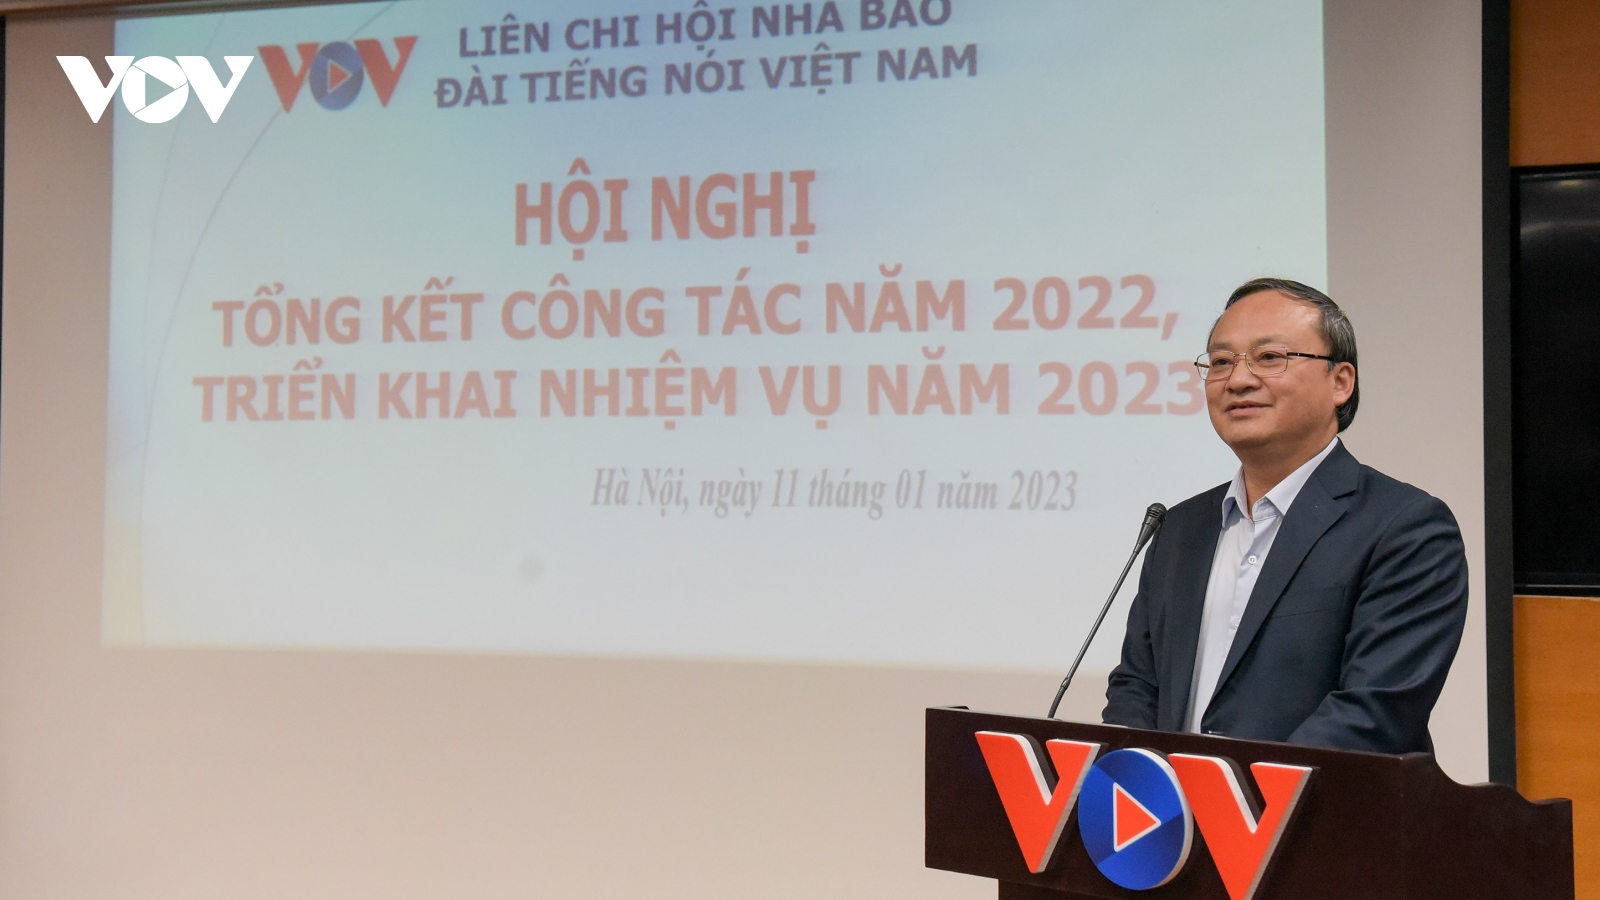 Liên Chi hội Nhà báo VOV tổng kết công tác năm 2022, triển khai nhiệm vụ năm 2023